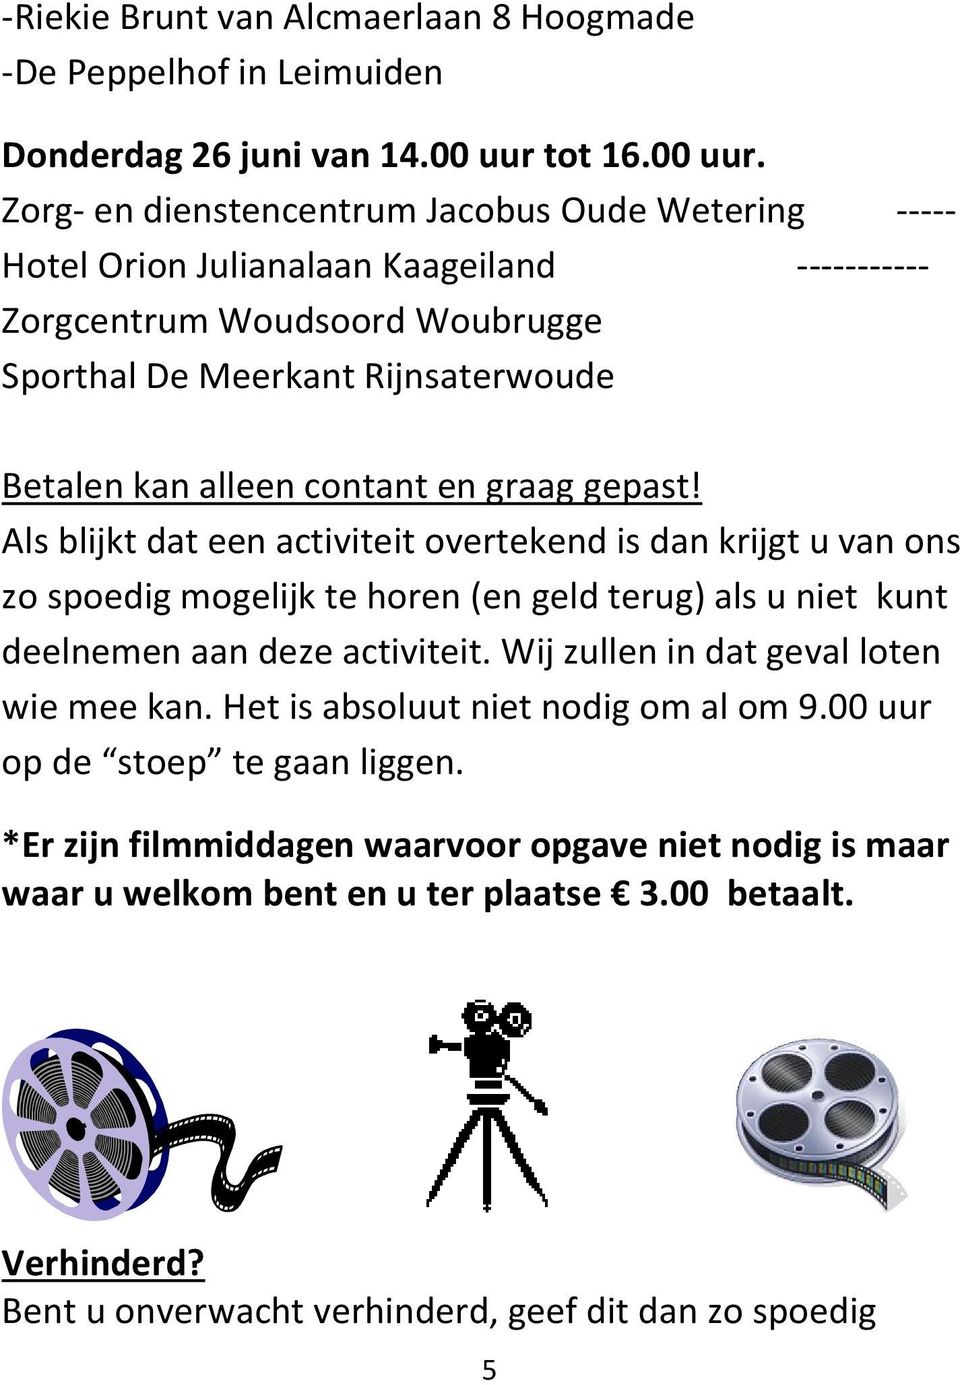 Zorg- en dienstencentrum Jacobus Oude Wetering ----- Hotel Orion Julianalaan Kaageiland ----------- Zorgcentrum Woudsoord Woubrugge Sporthal De Meerkant Rijnsaterwoude Betalen kan alleen